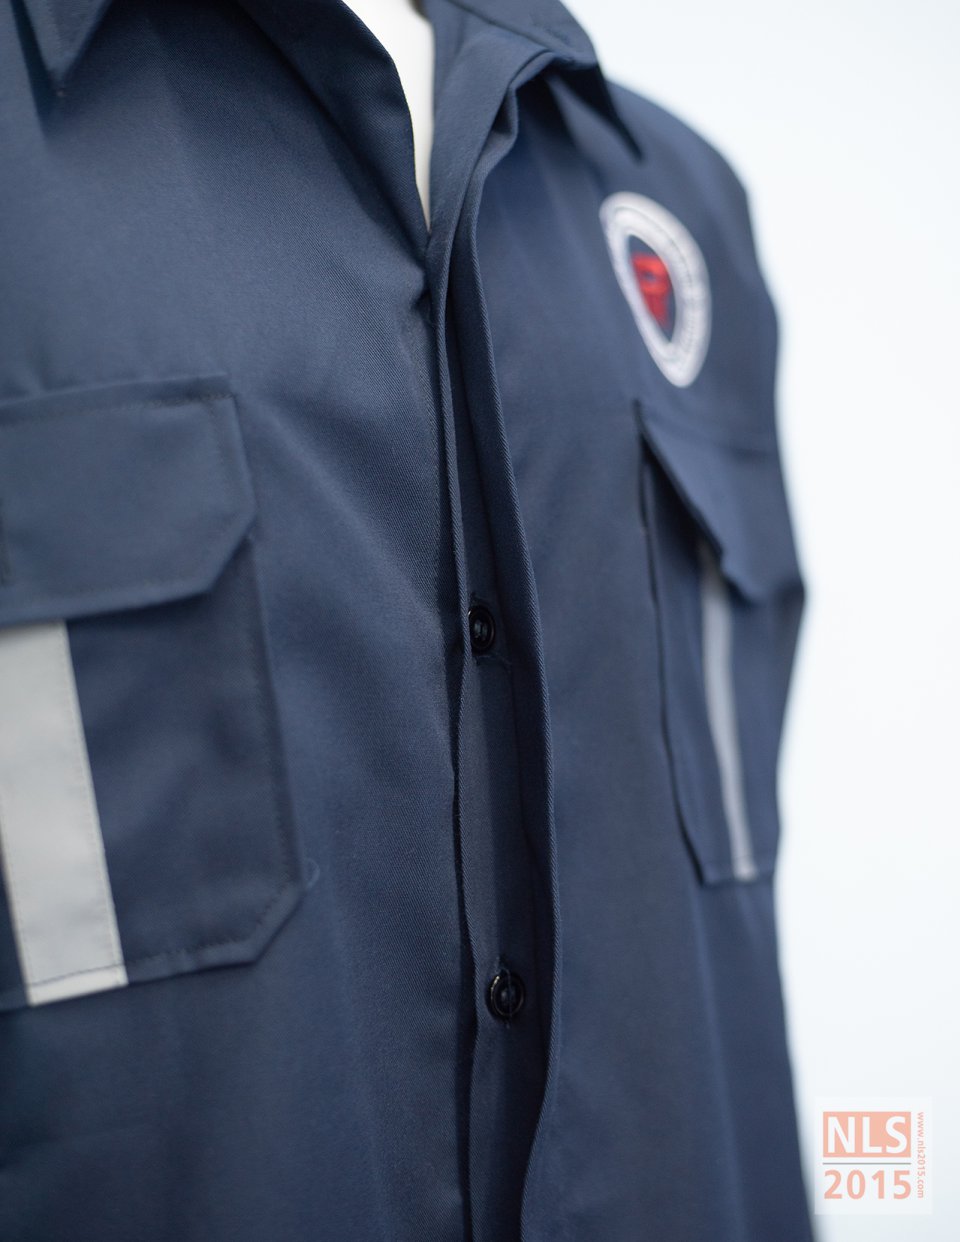 โรงงาน ตัดชุดฟอร์มพนักงาน เสื้อช้อปช่าง เสื้อเชิ้ต เสื้อโปโล กางเกงพนักงาน นลินสิริ 2015 ศรีราชา ชลบุรีรูปที่ 